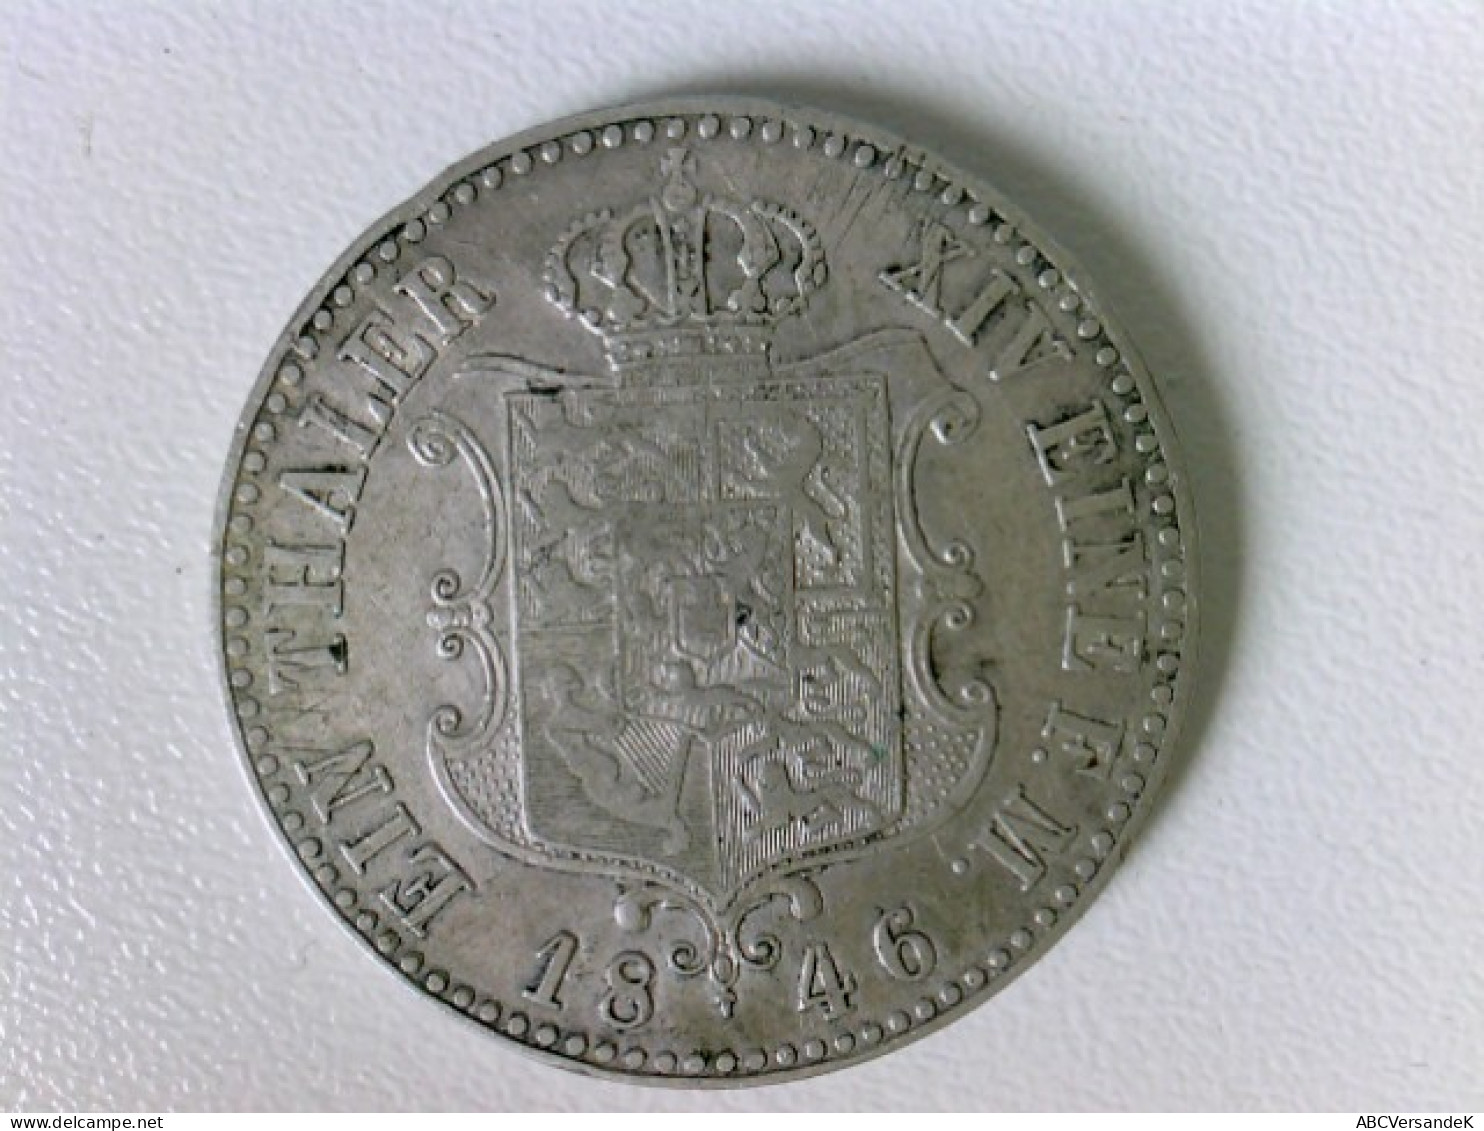 Münze: 1 Tahler (Taler) Ernst August V G G König Von Hannover A, XVI Eine F. M. - Numismatica